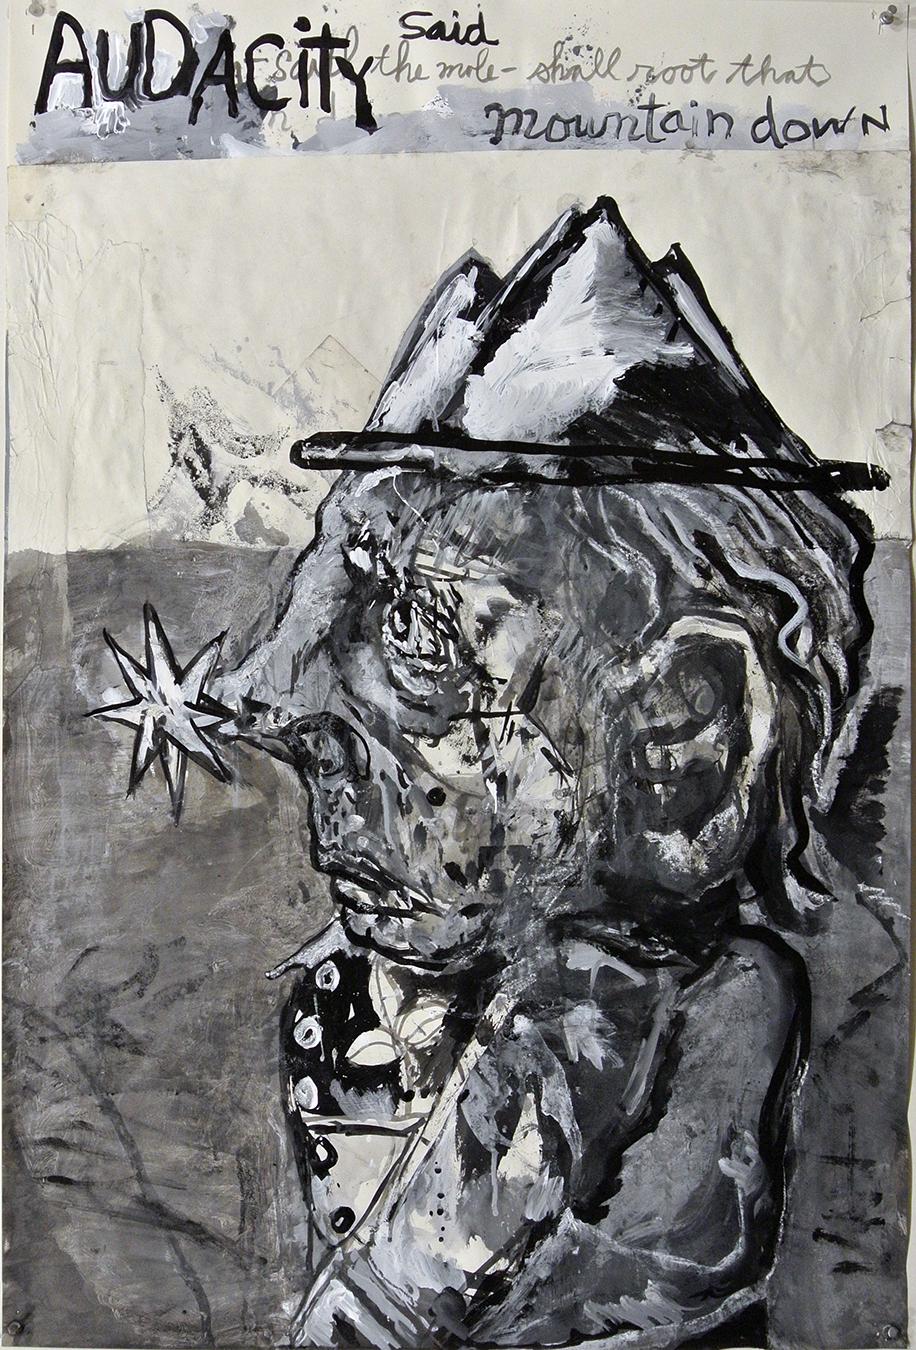 Portrait Painting Dale Williams - « Starnosed Mole », peinture acrylique, portrait, politique, poésie, humanité, résistance